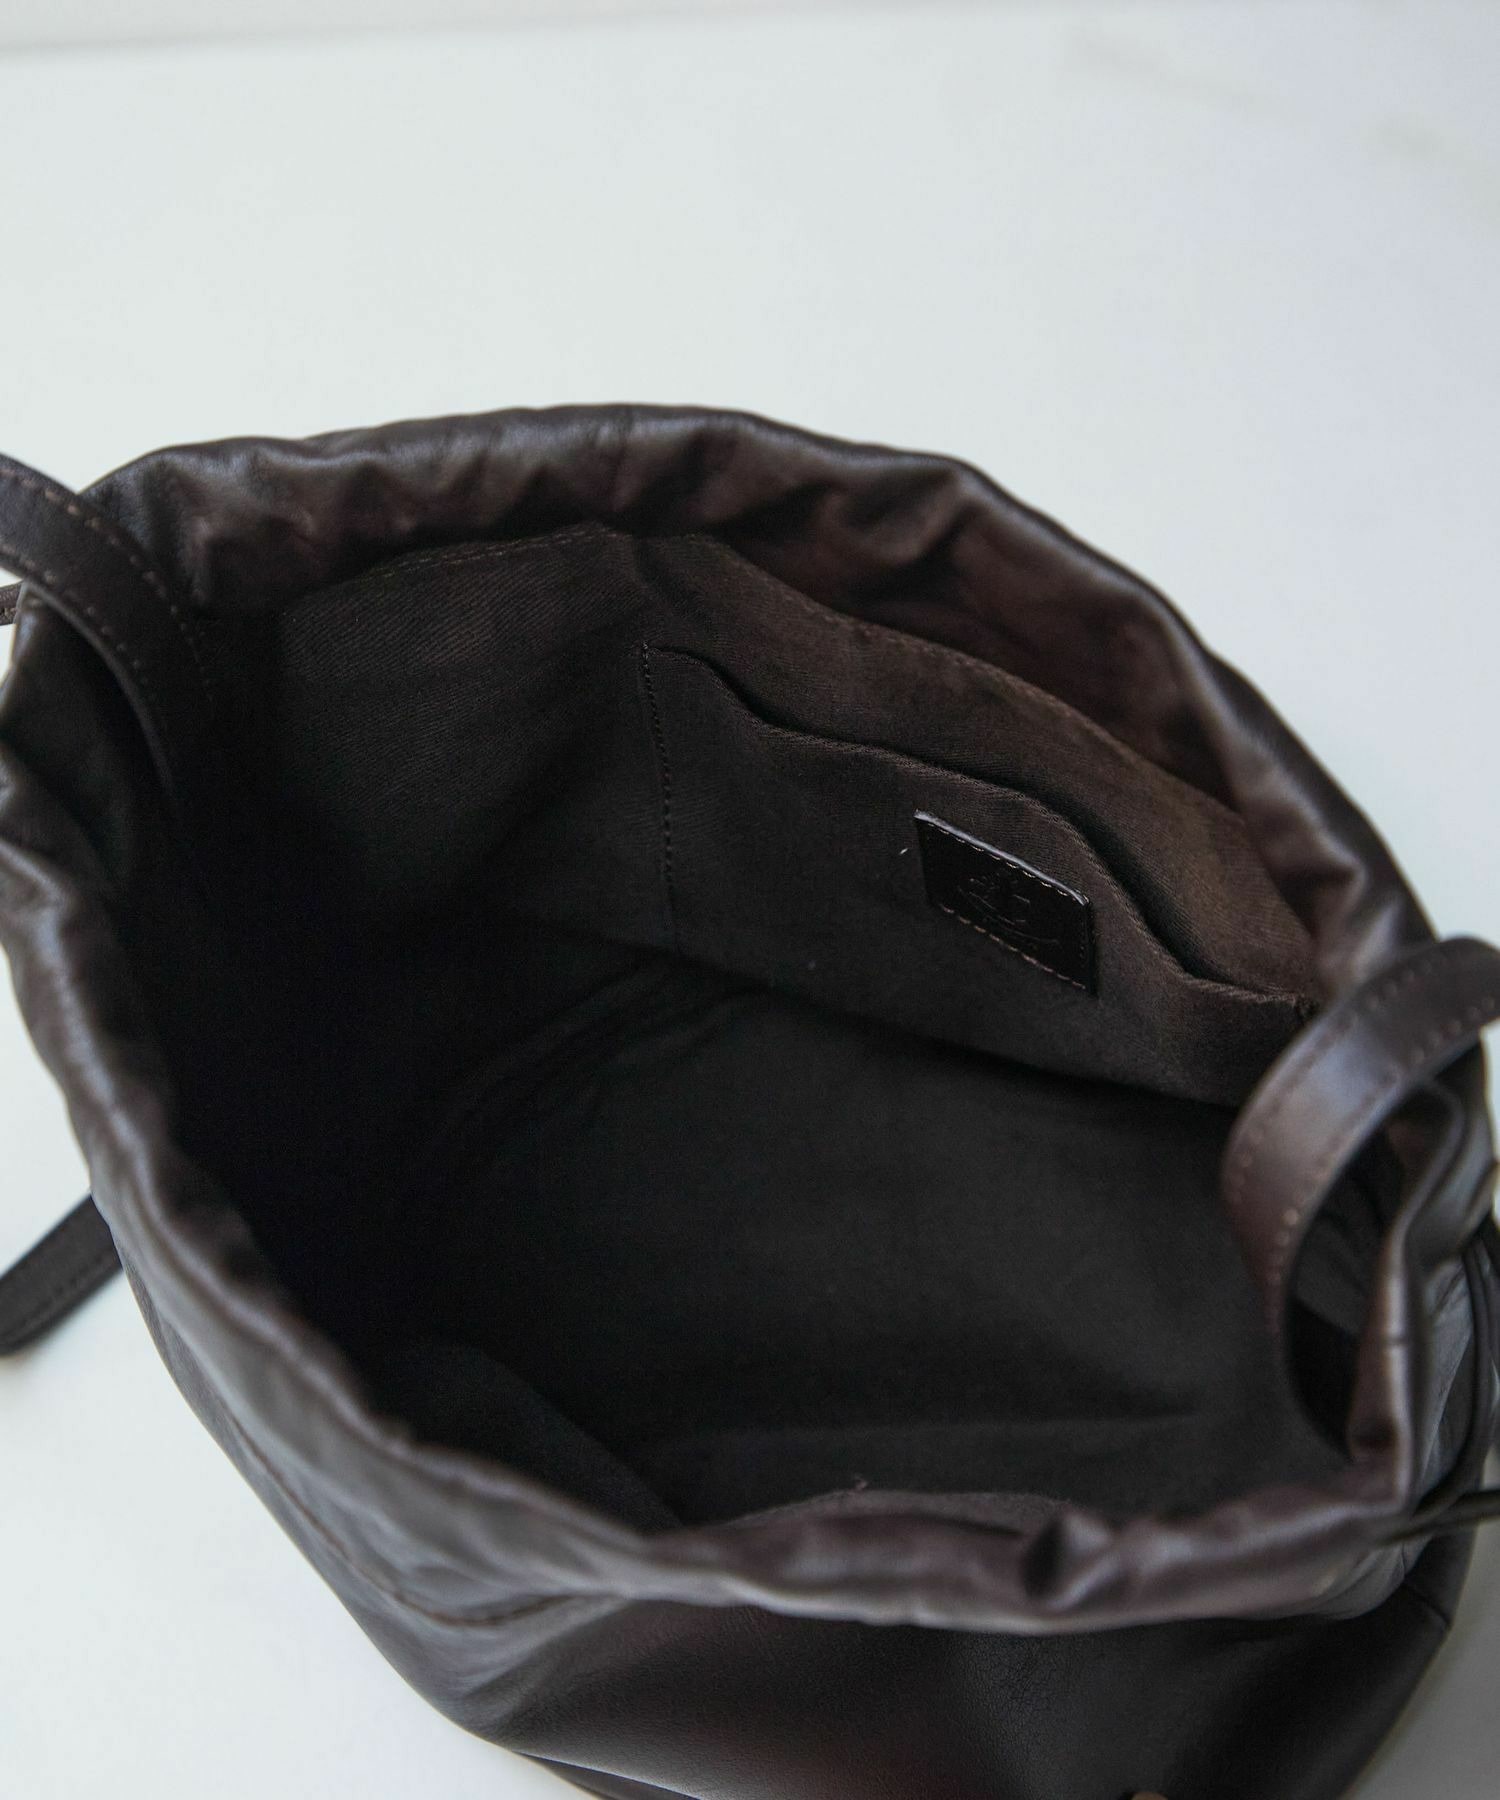 【LOISIR】レザー巾着Bag 詳細画像 ブラック 3